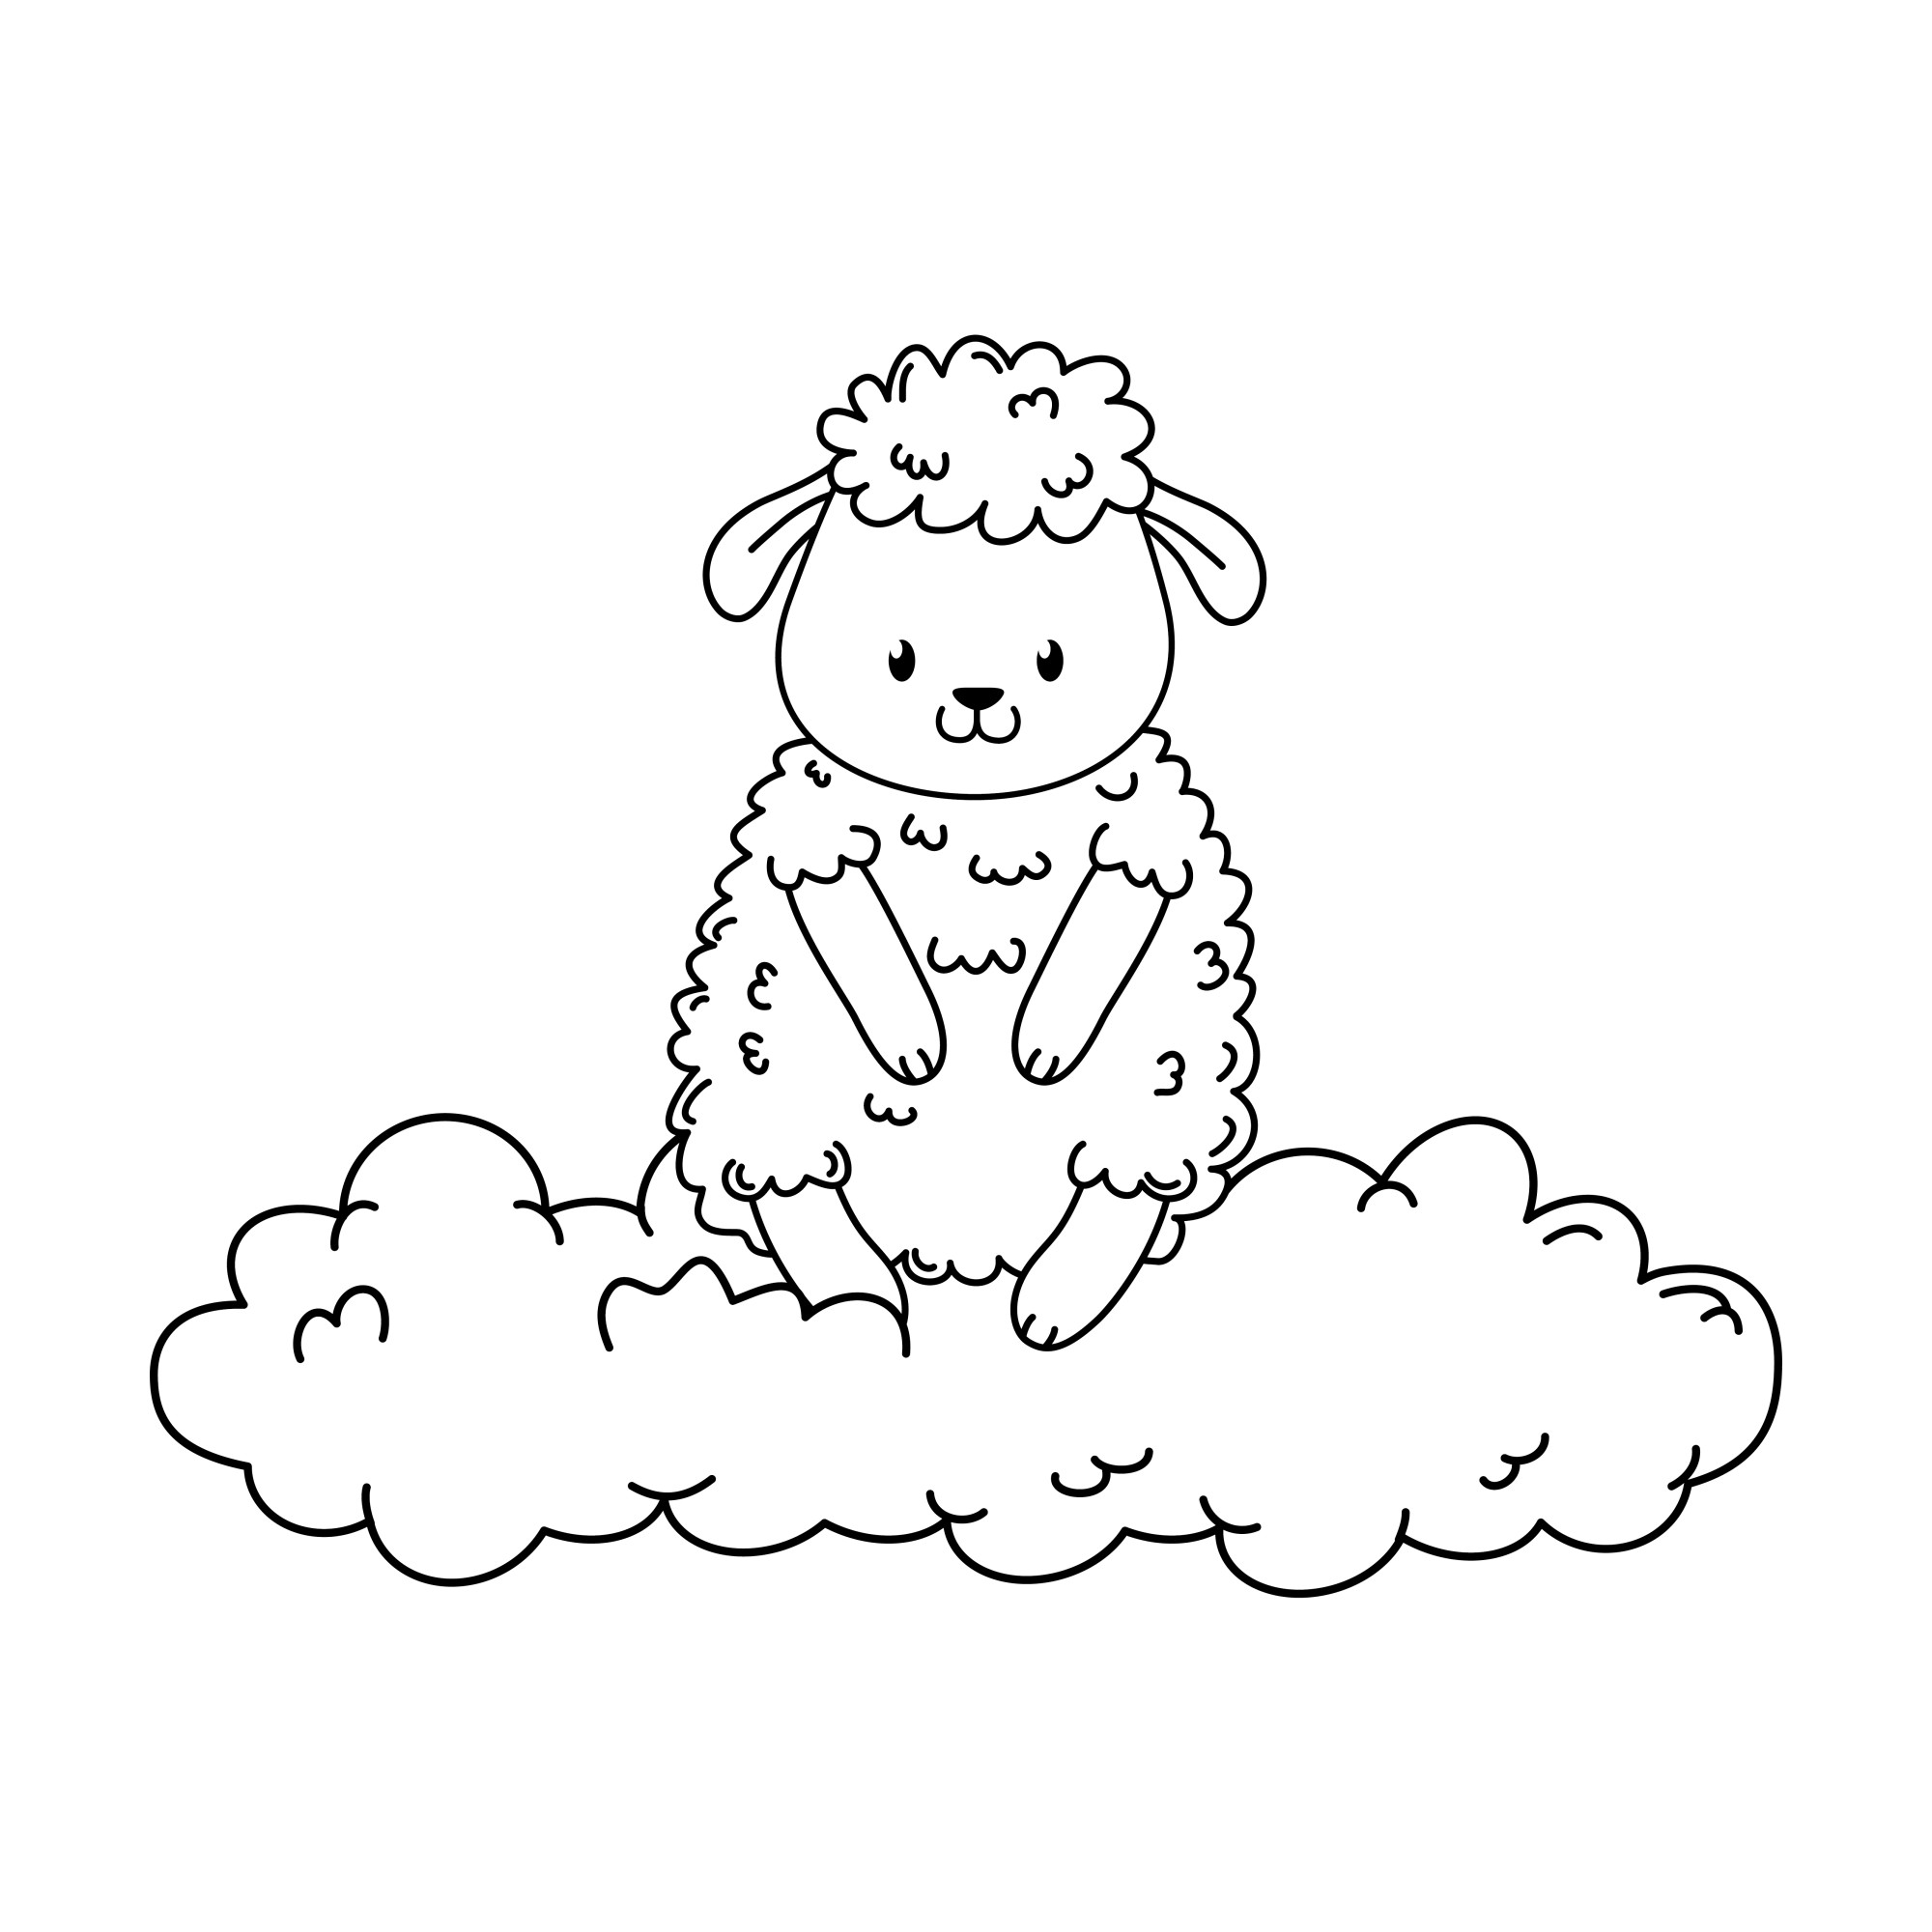 Раскраска для детей: овца сидит на облачке